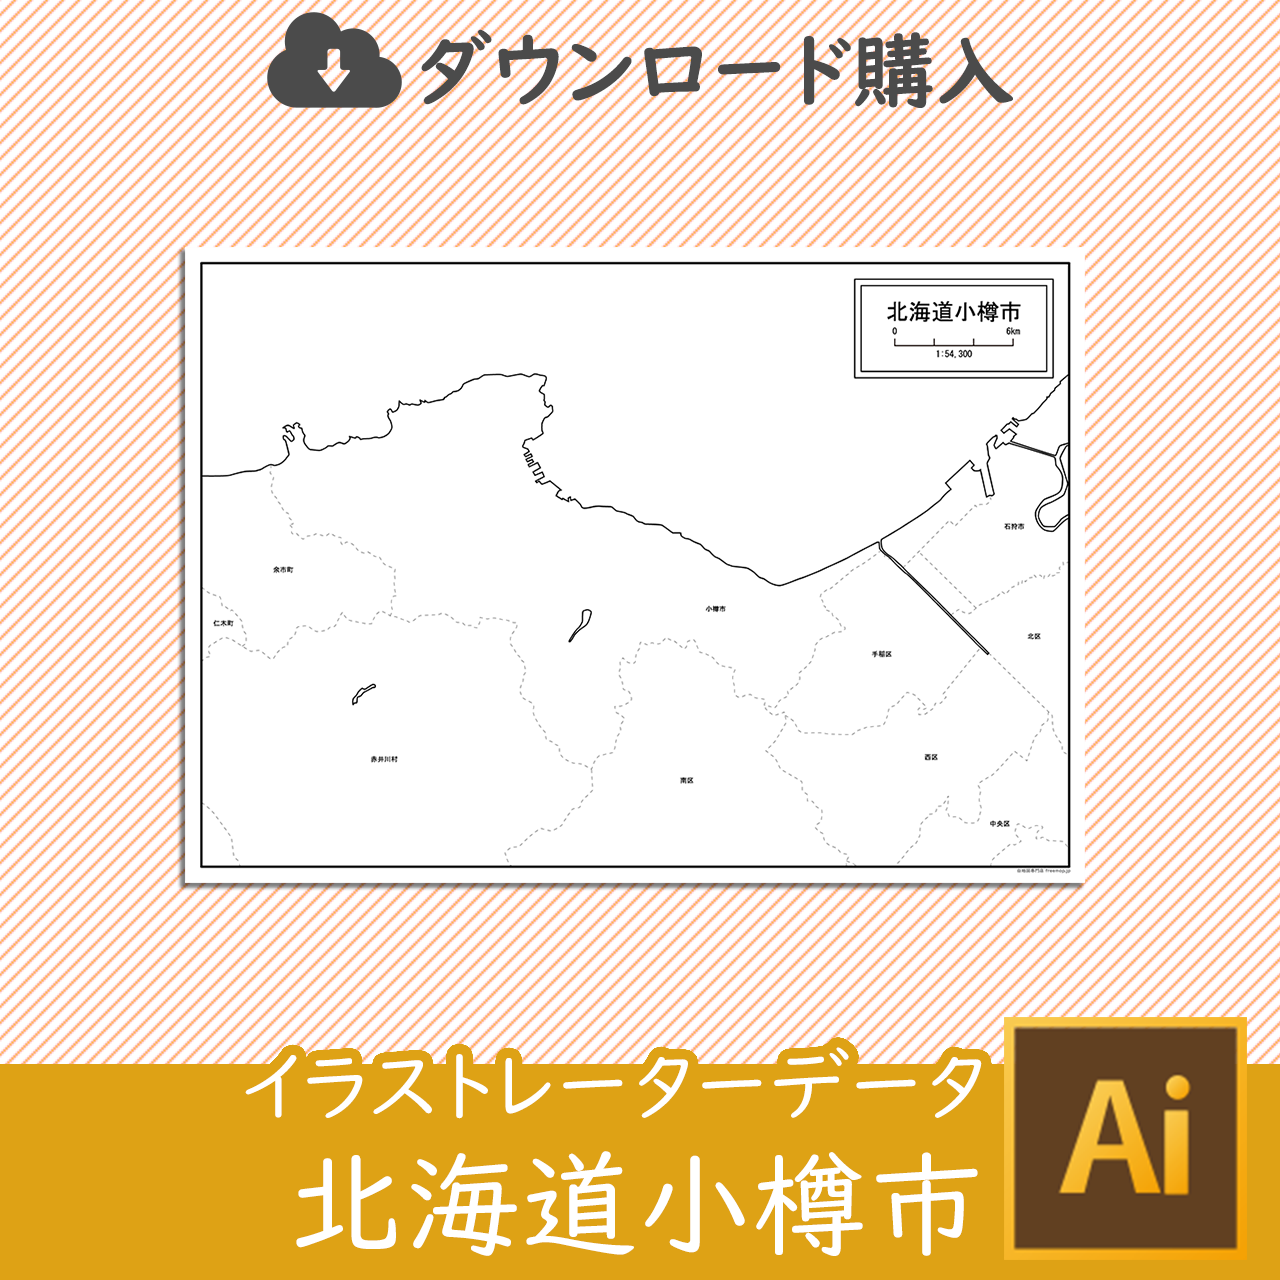 小樽市のaiデータのサムネイル画像